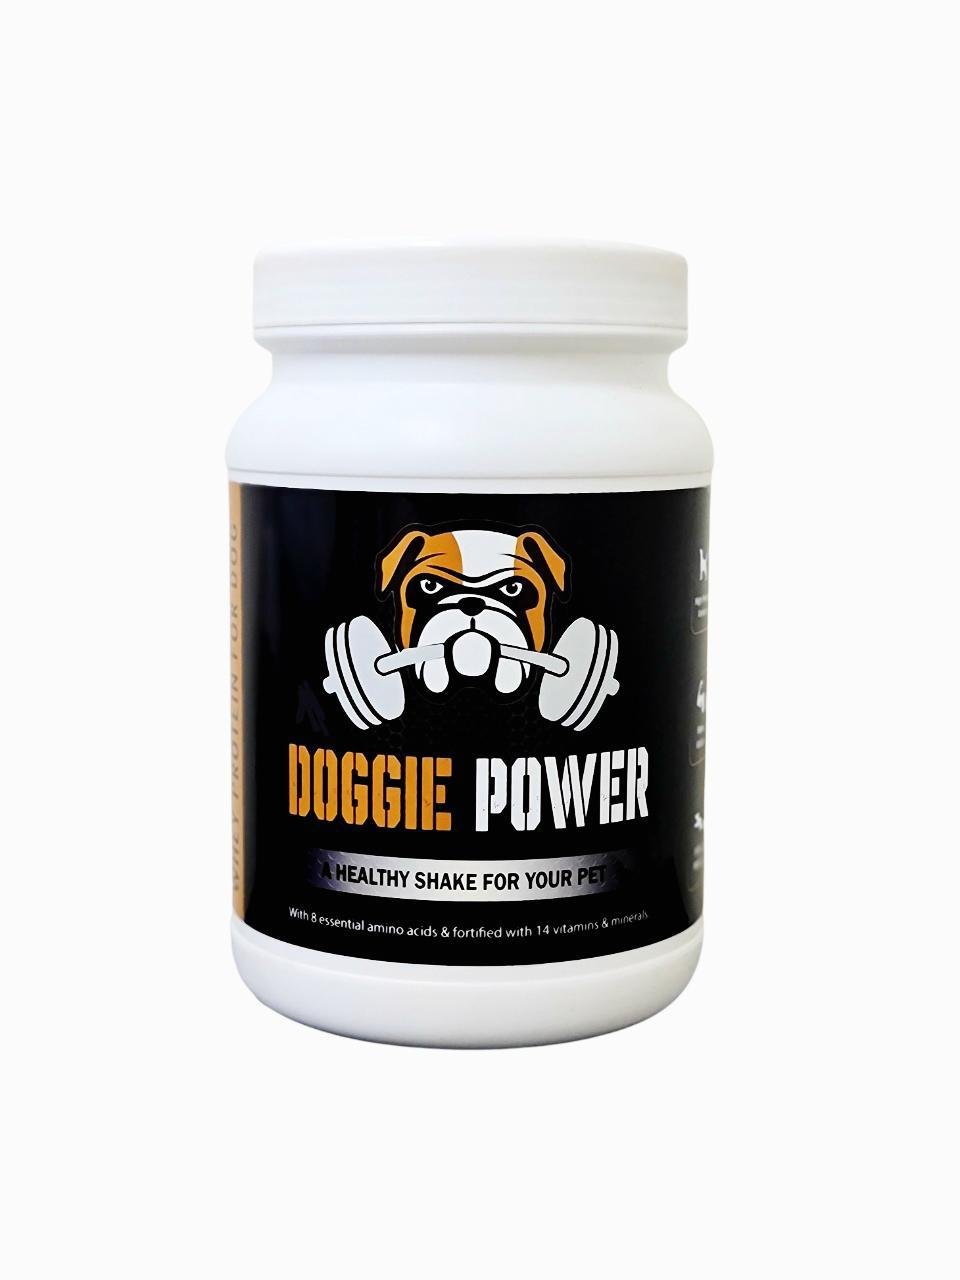 Doggie Power is a dog milk powder